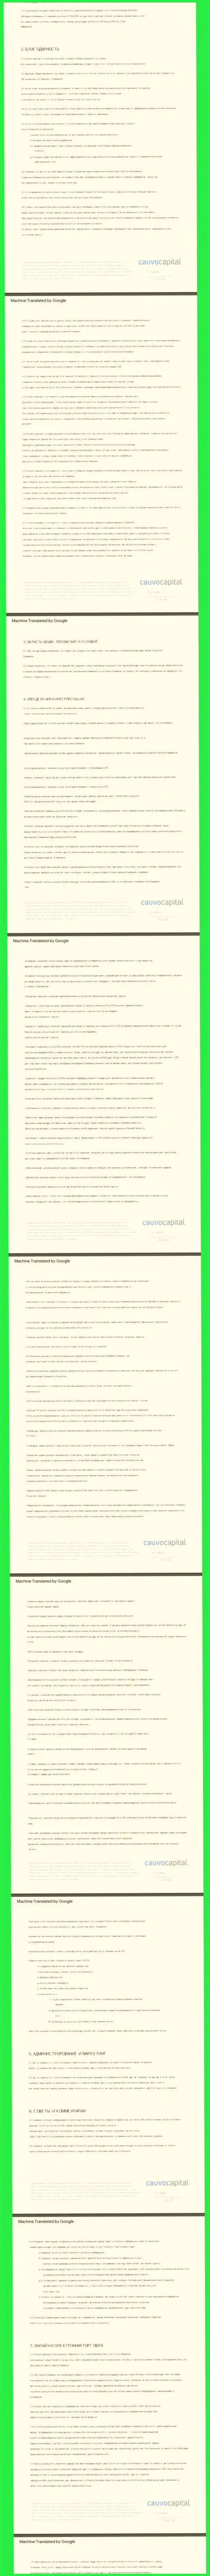 Часть первая пользовательского соглашения организации Cauvo Capital